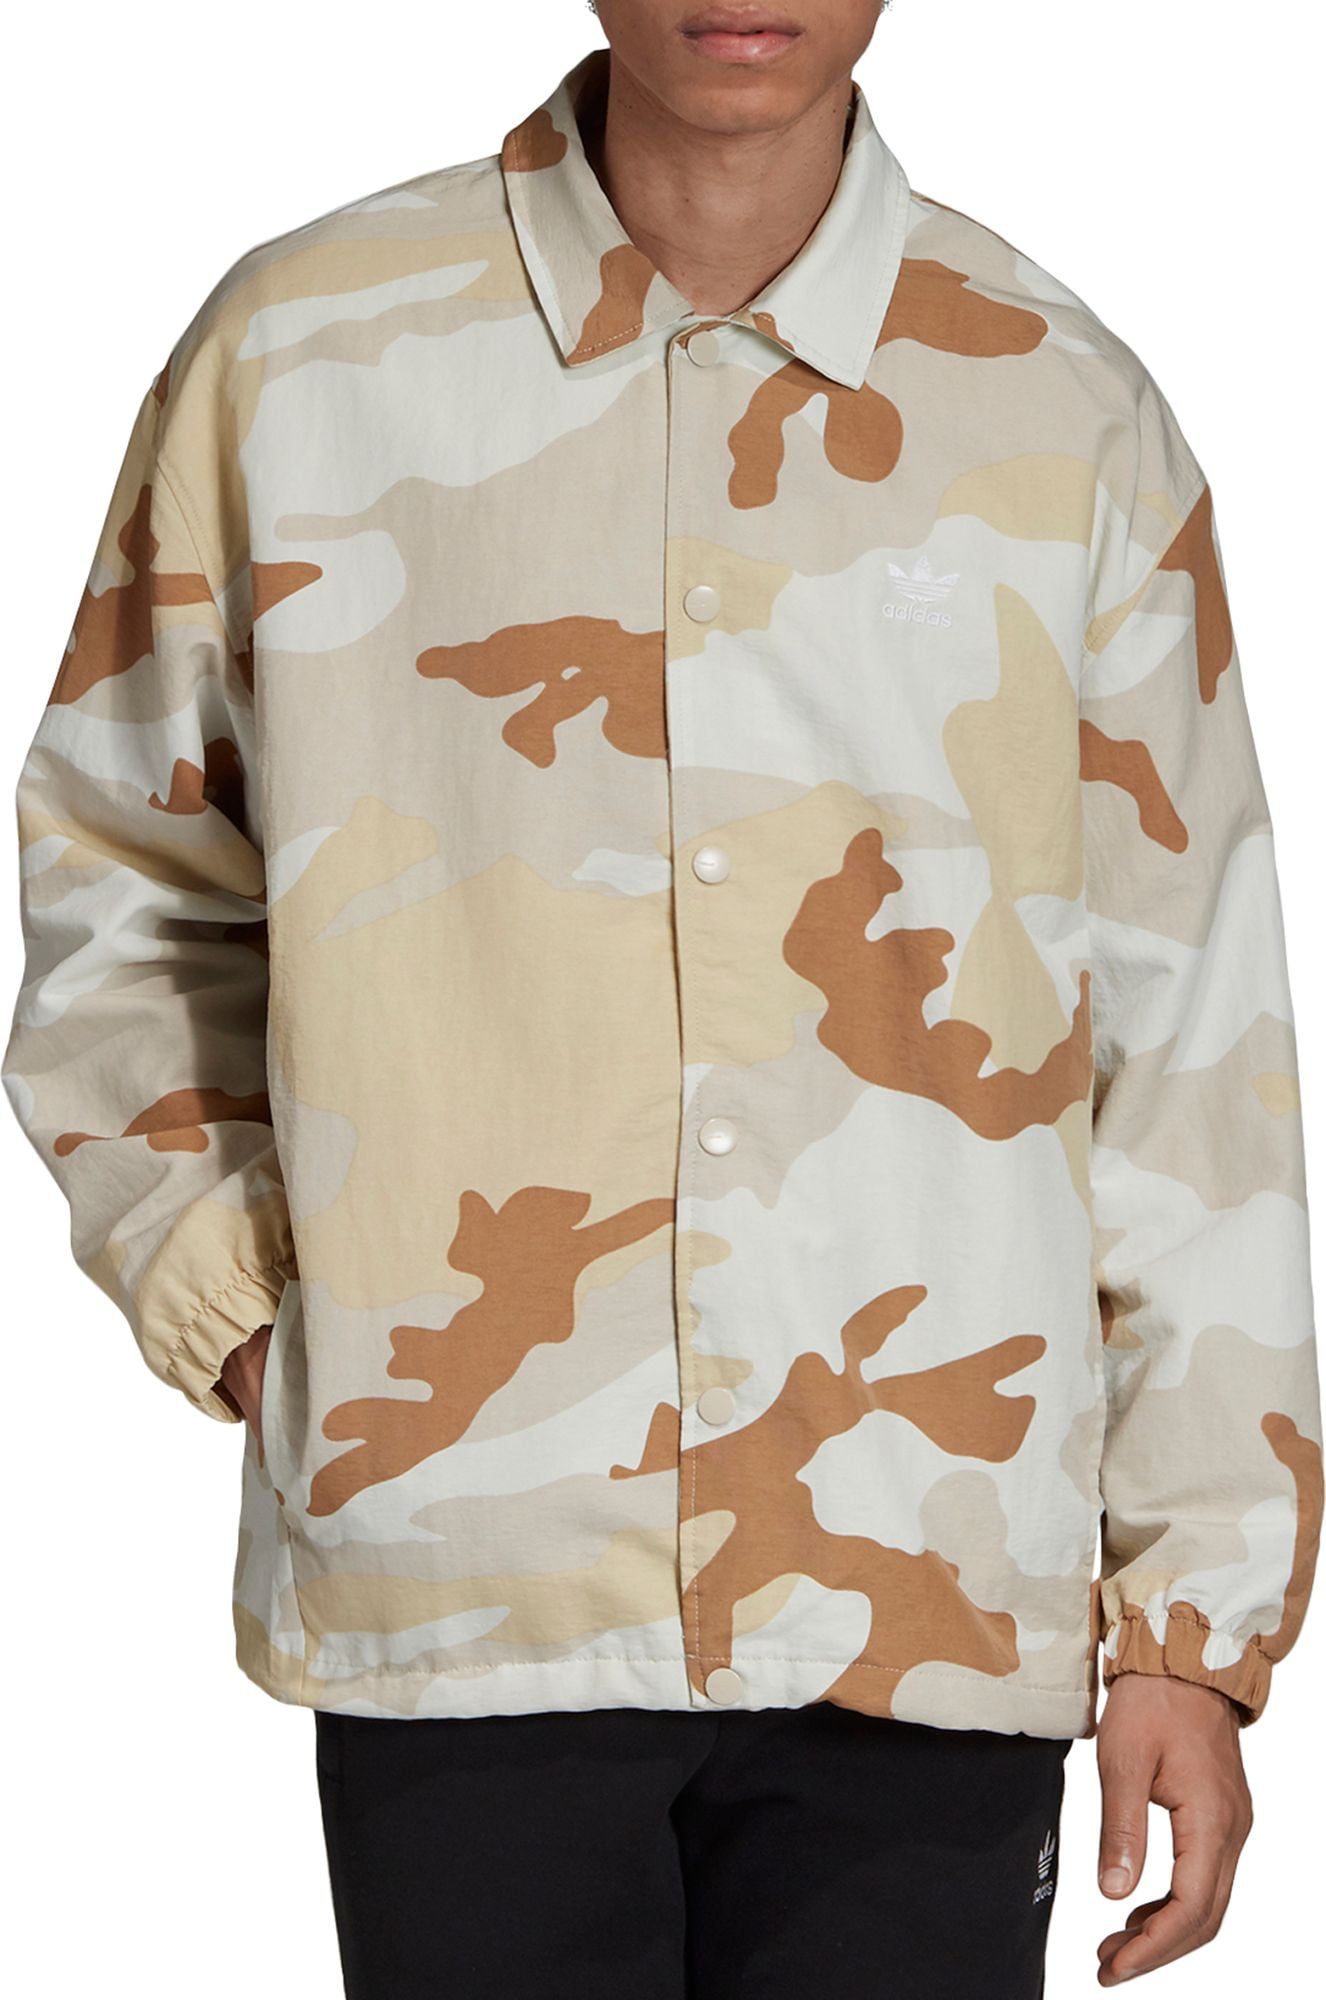 adidas men's camouflage jacket